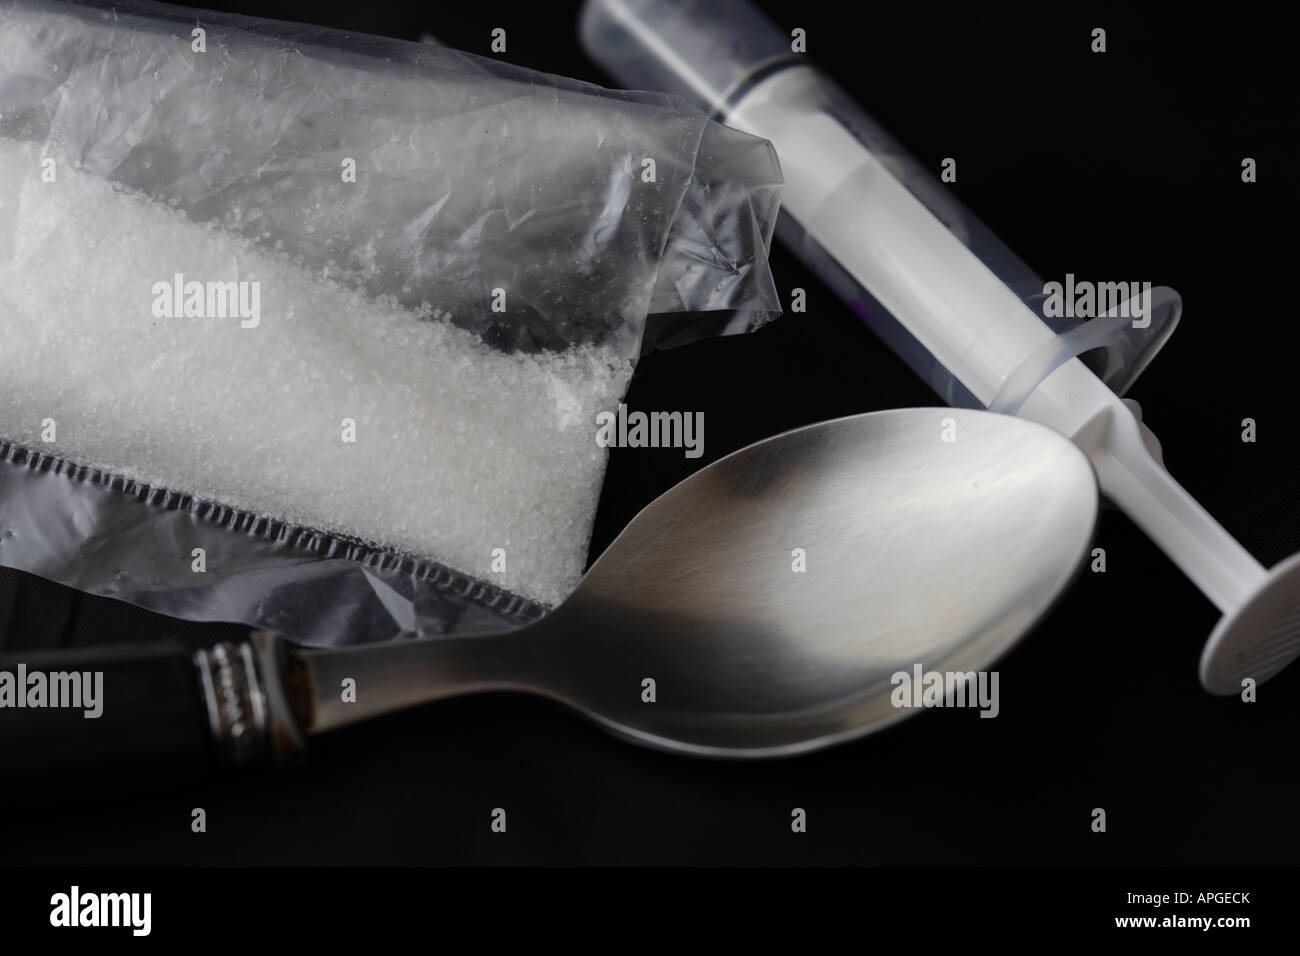 Gli strumenti di un adict. Immagine di droghe. Foto Stock